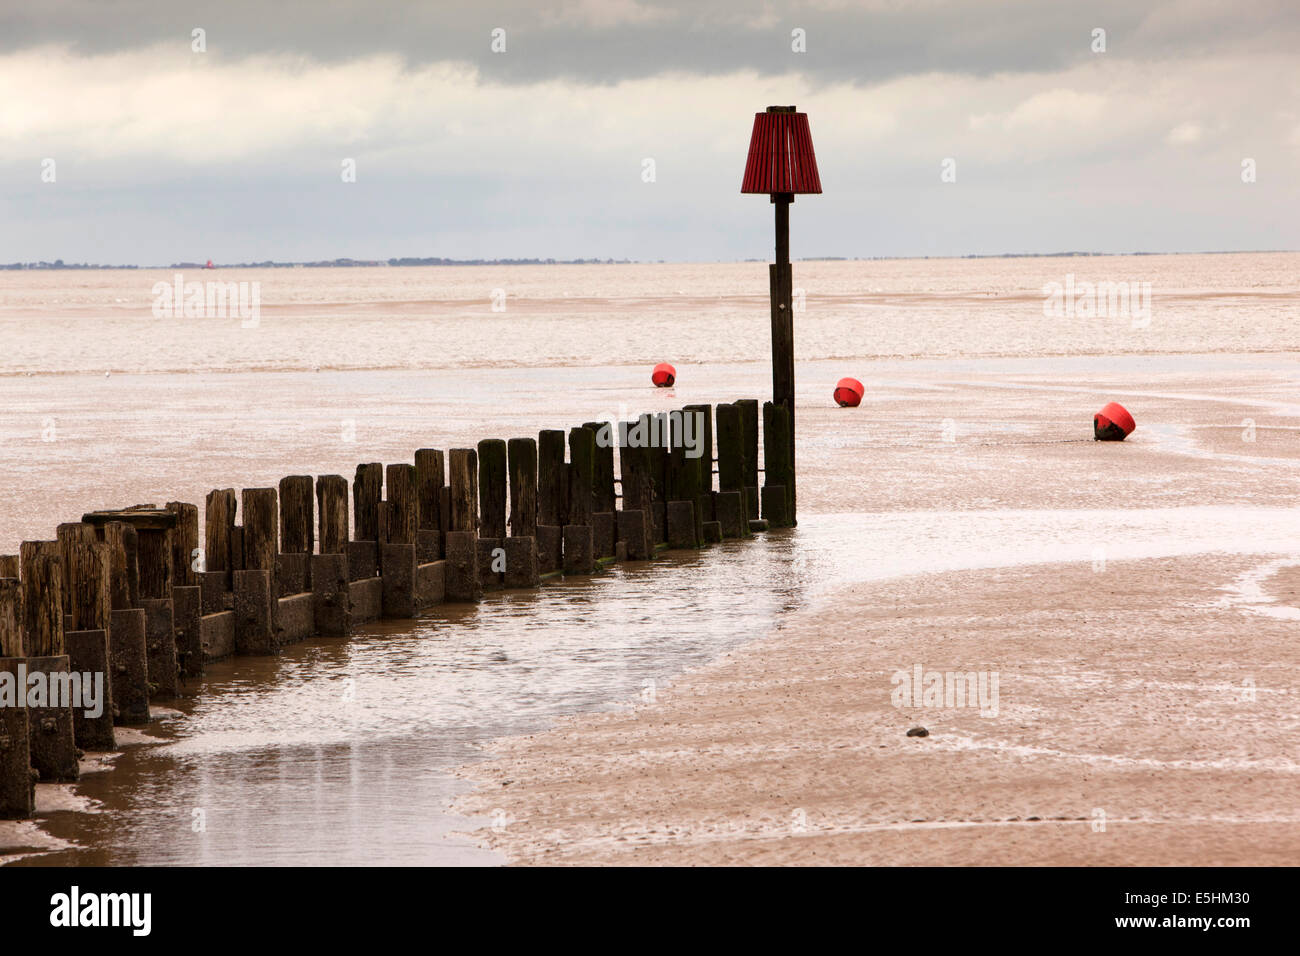 Regno Unito, Inghilterra, Lincolnshire, Cleethorpes, frangionde accanto al molo sulla Humber Estuary Foto Stock